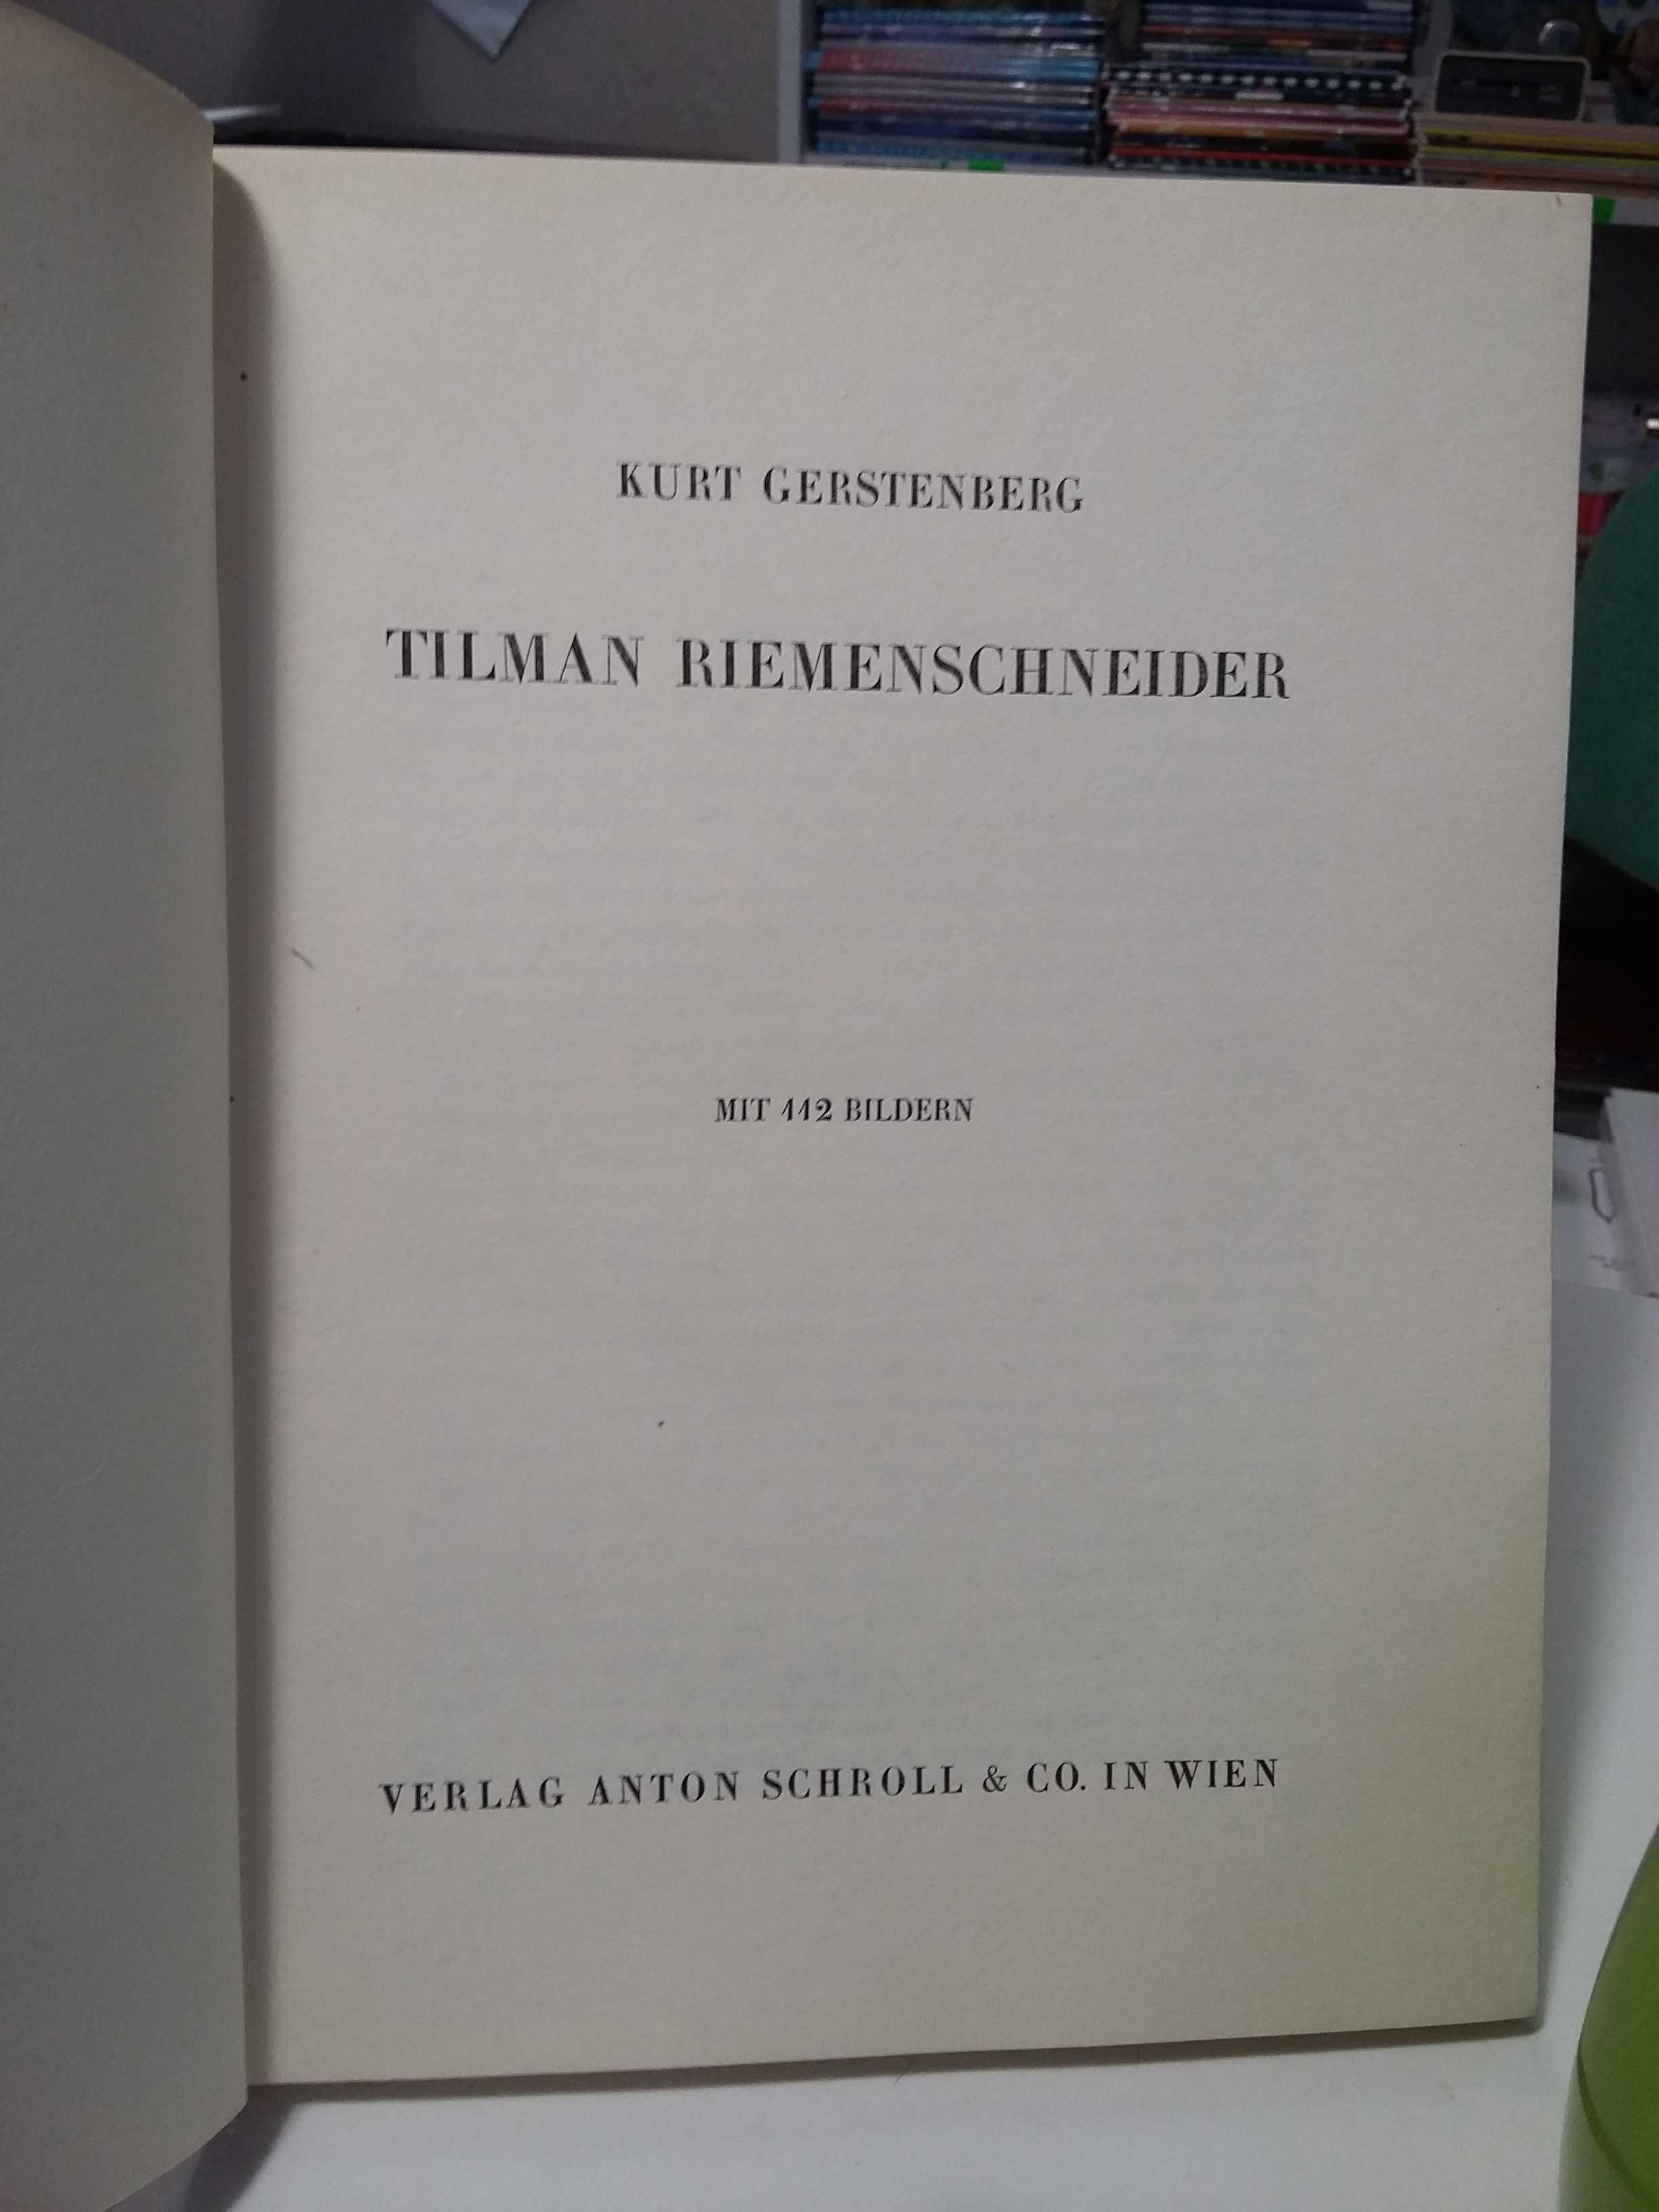 Tilman Riemenschneider rzeźba gotyk album 1941